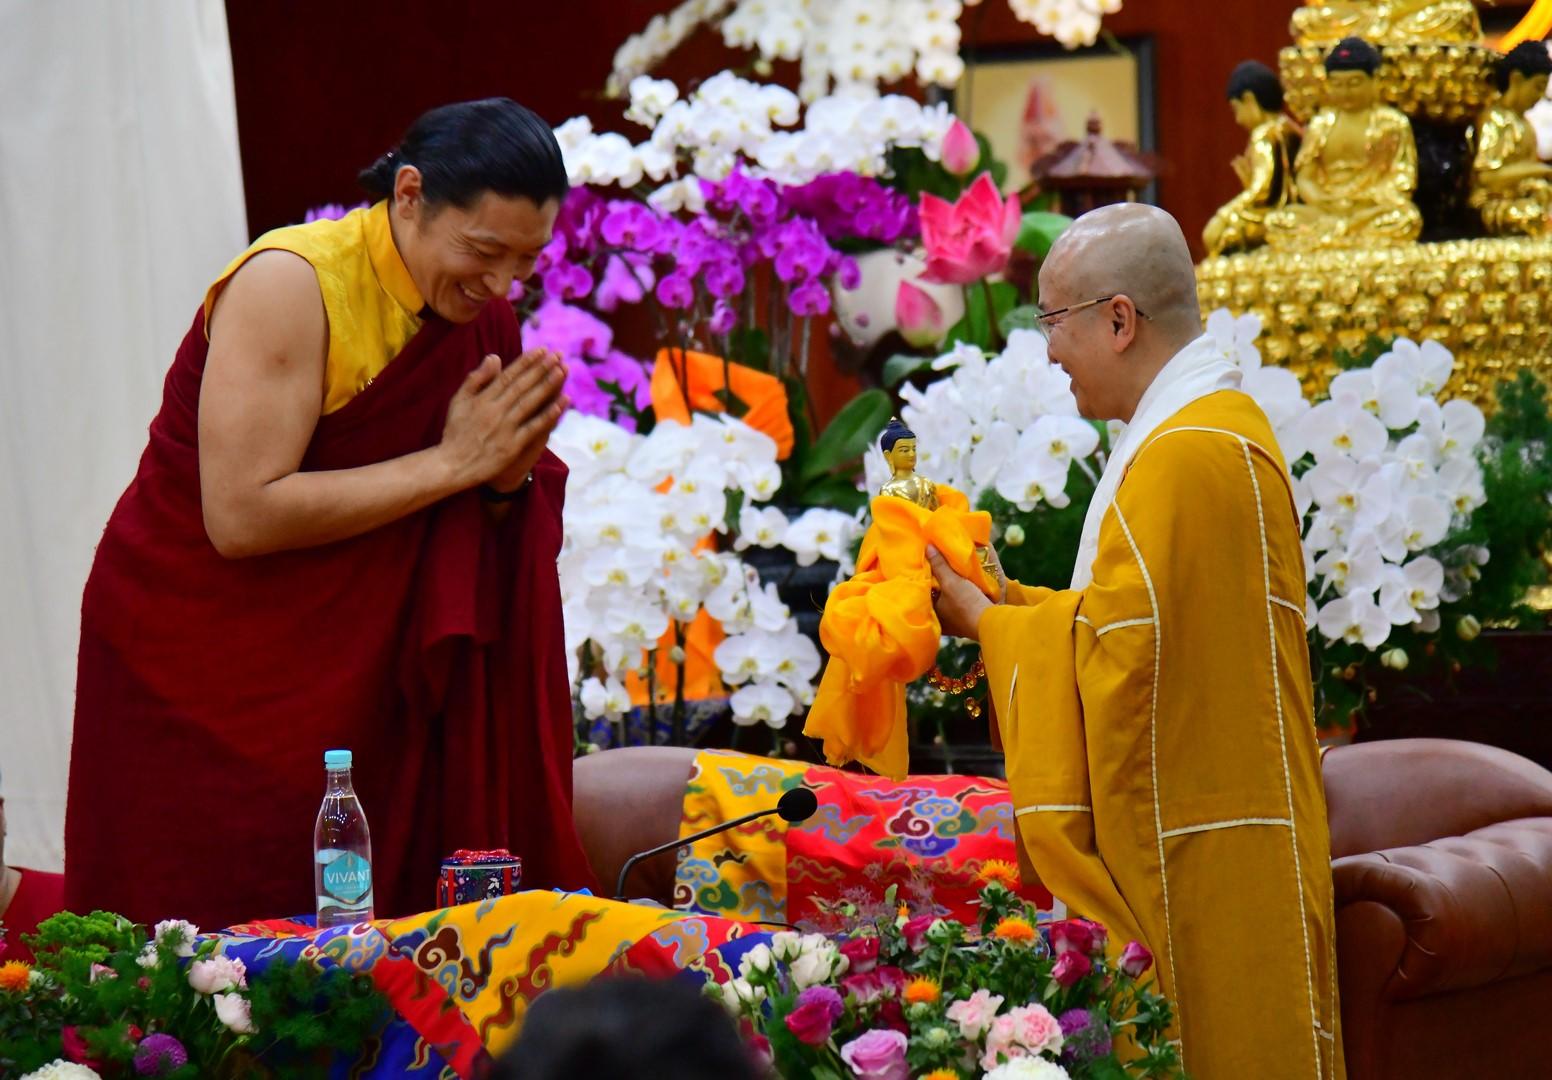 Pháp đàm về thiền của ngài Kyabgön Phakchok Rinpoche tại chùa Giác Ngộ (quận 10, TP.HCM)